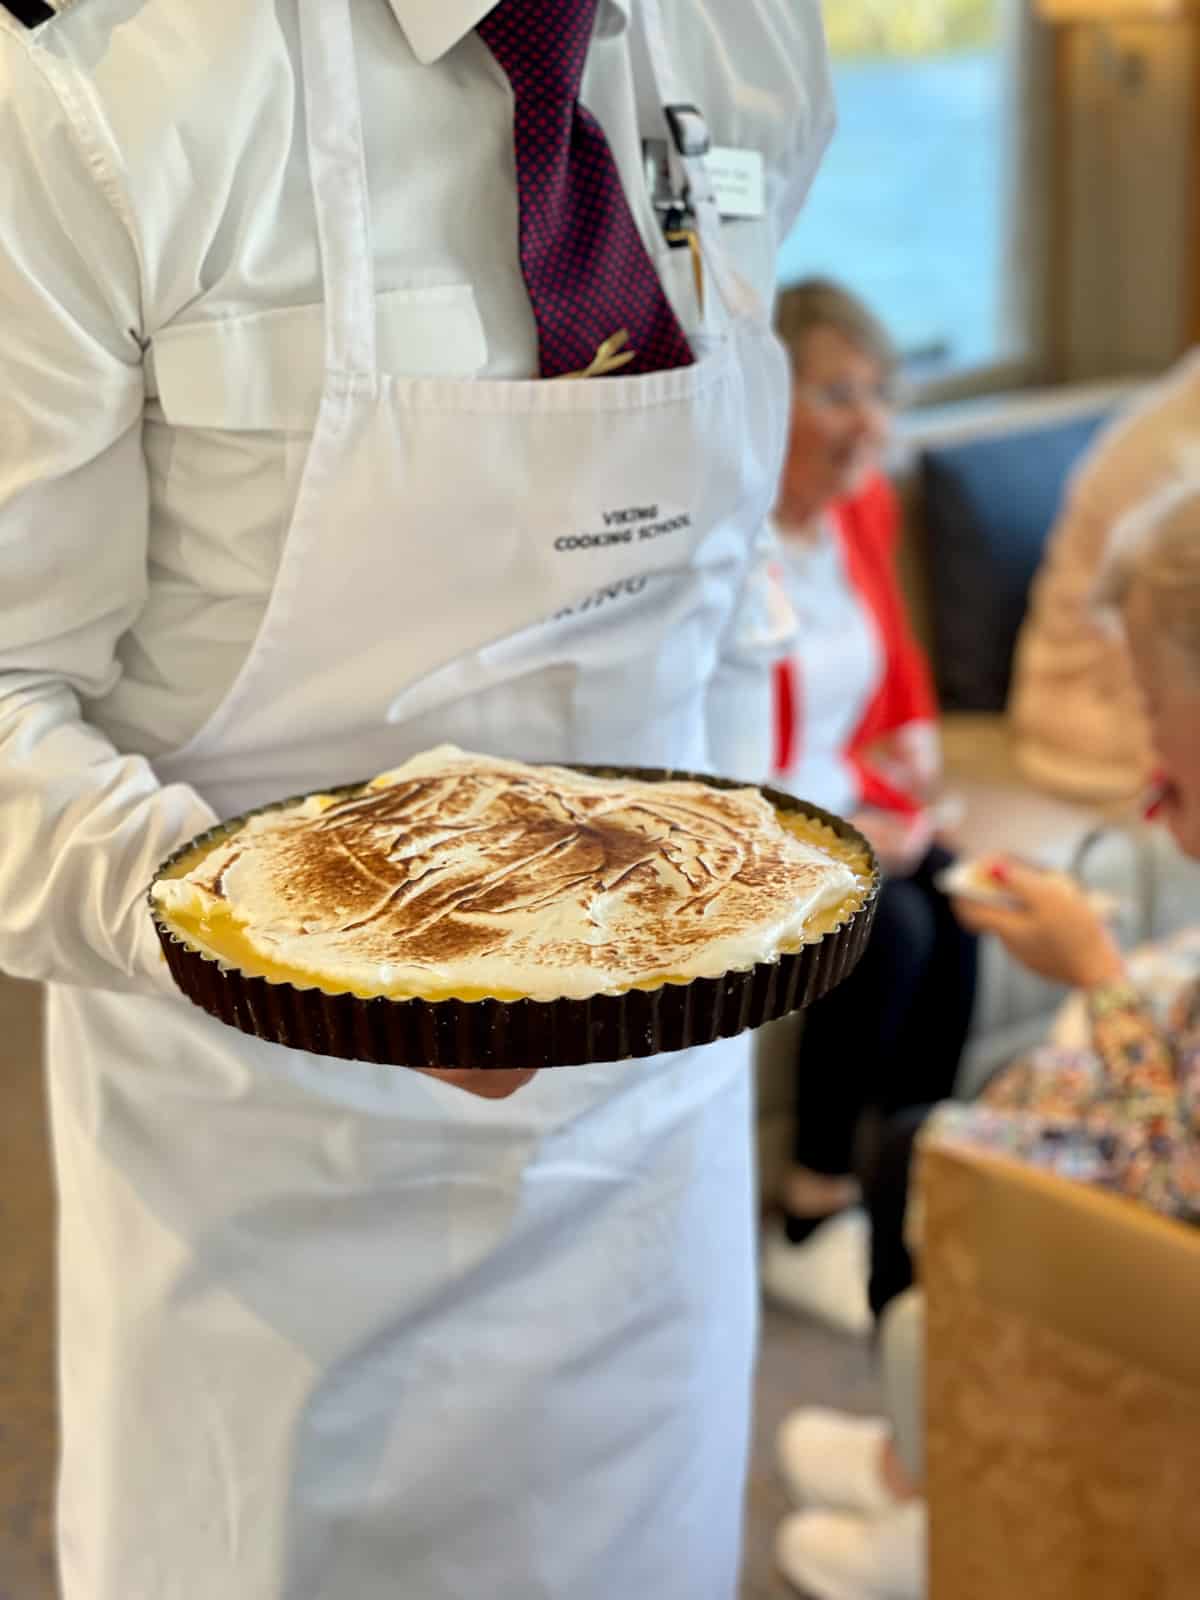 Chef holding a lemon meringue pie.